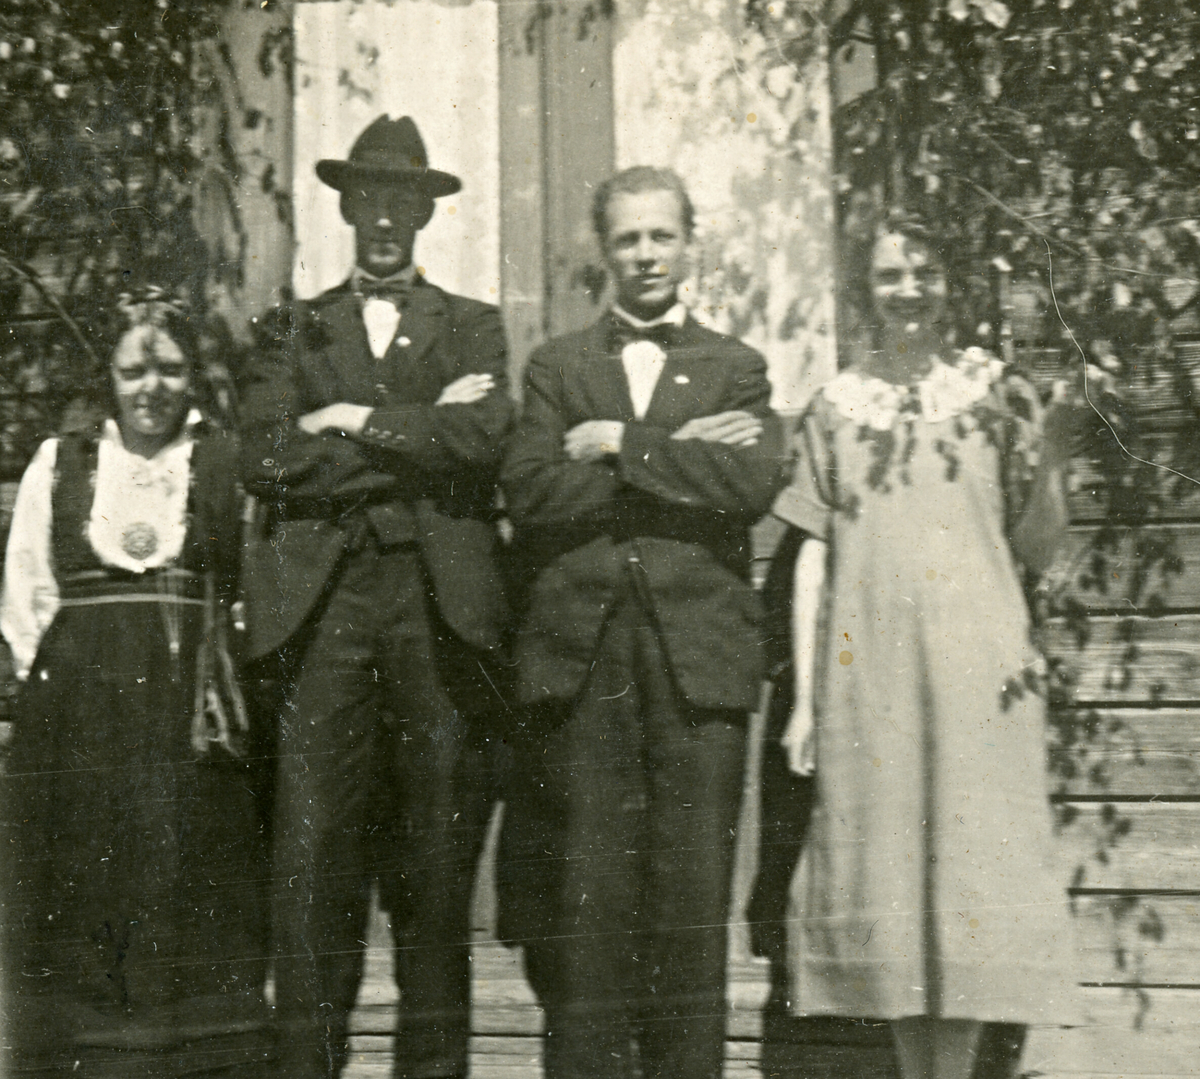 Fire bilde frå eit stemne i Bø i 1926.  Bilde 1: I midten "Tulla" Helland, t.h Vehus.  Bilde 3: "Malla", Bakken, "Tulla"  Bilde 4: "Malla", Bakken, Haugeto, "Tulla"